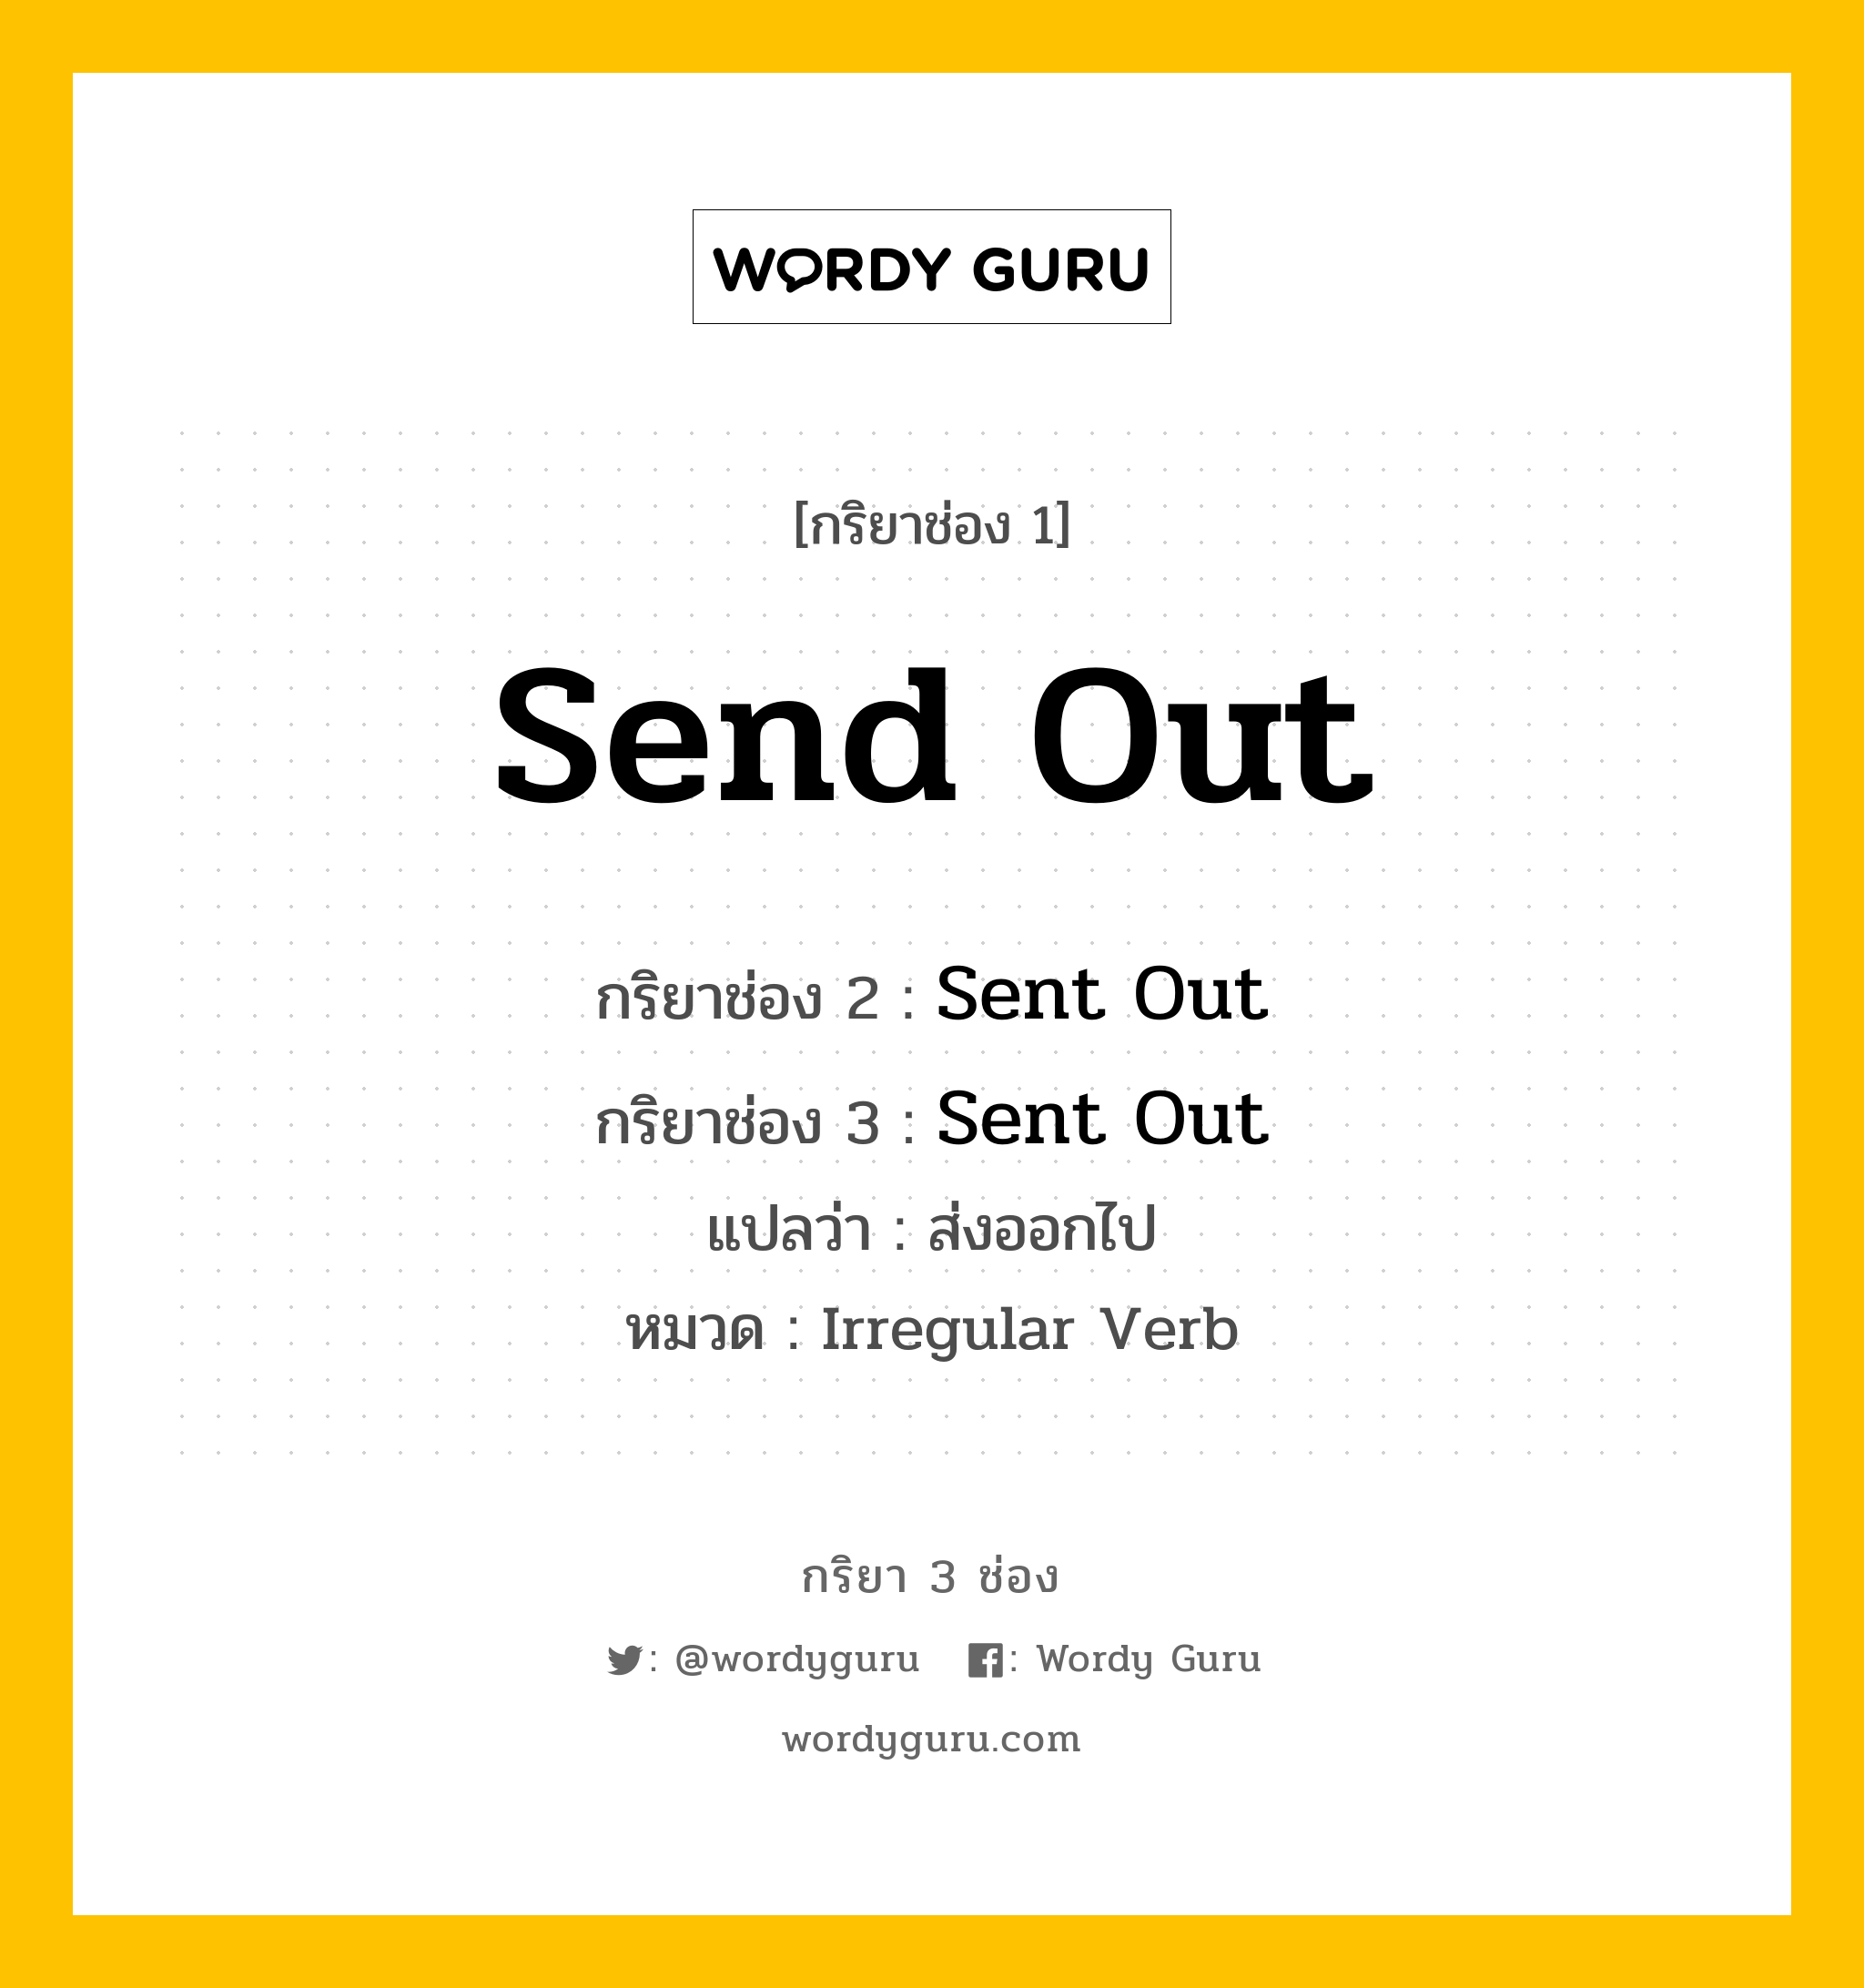 กริยา 3 ช่อง: Send Out ช่อง 2 Send Out ช่อง 3 คืออะไร, กริยาช่อง 1 Send Out กริยาช่อง 2 Sent Out กริยาช่อง 3 Sent Out แปลว่า ส่งออกไป หมวด Irregular Verb หมวด Irregular Verb